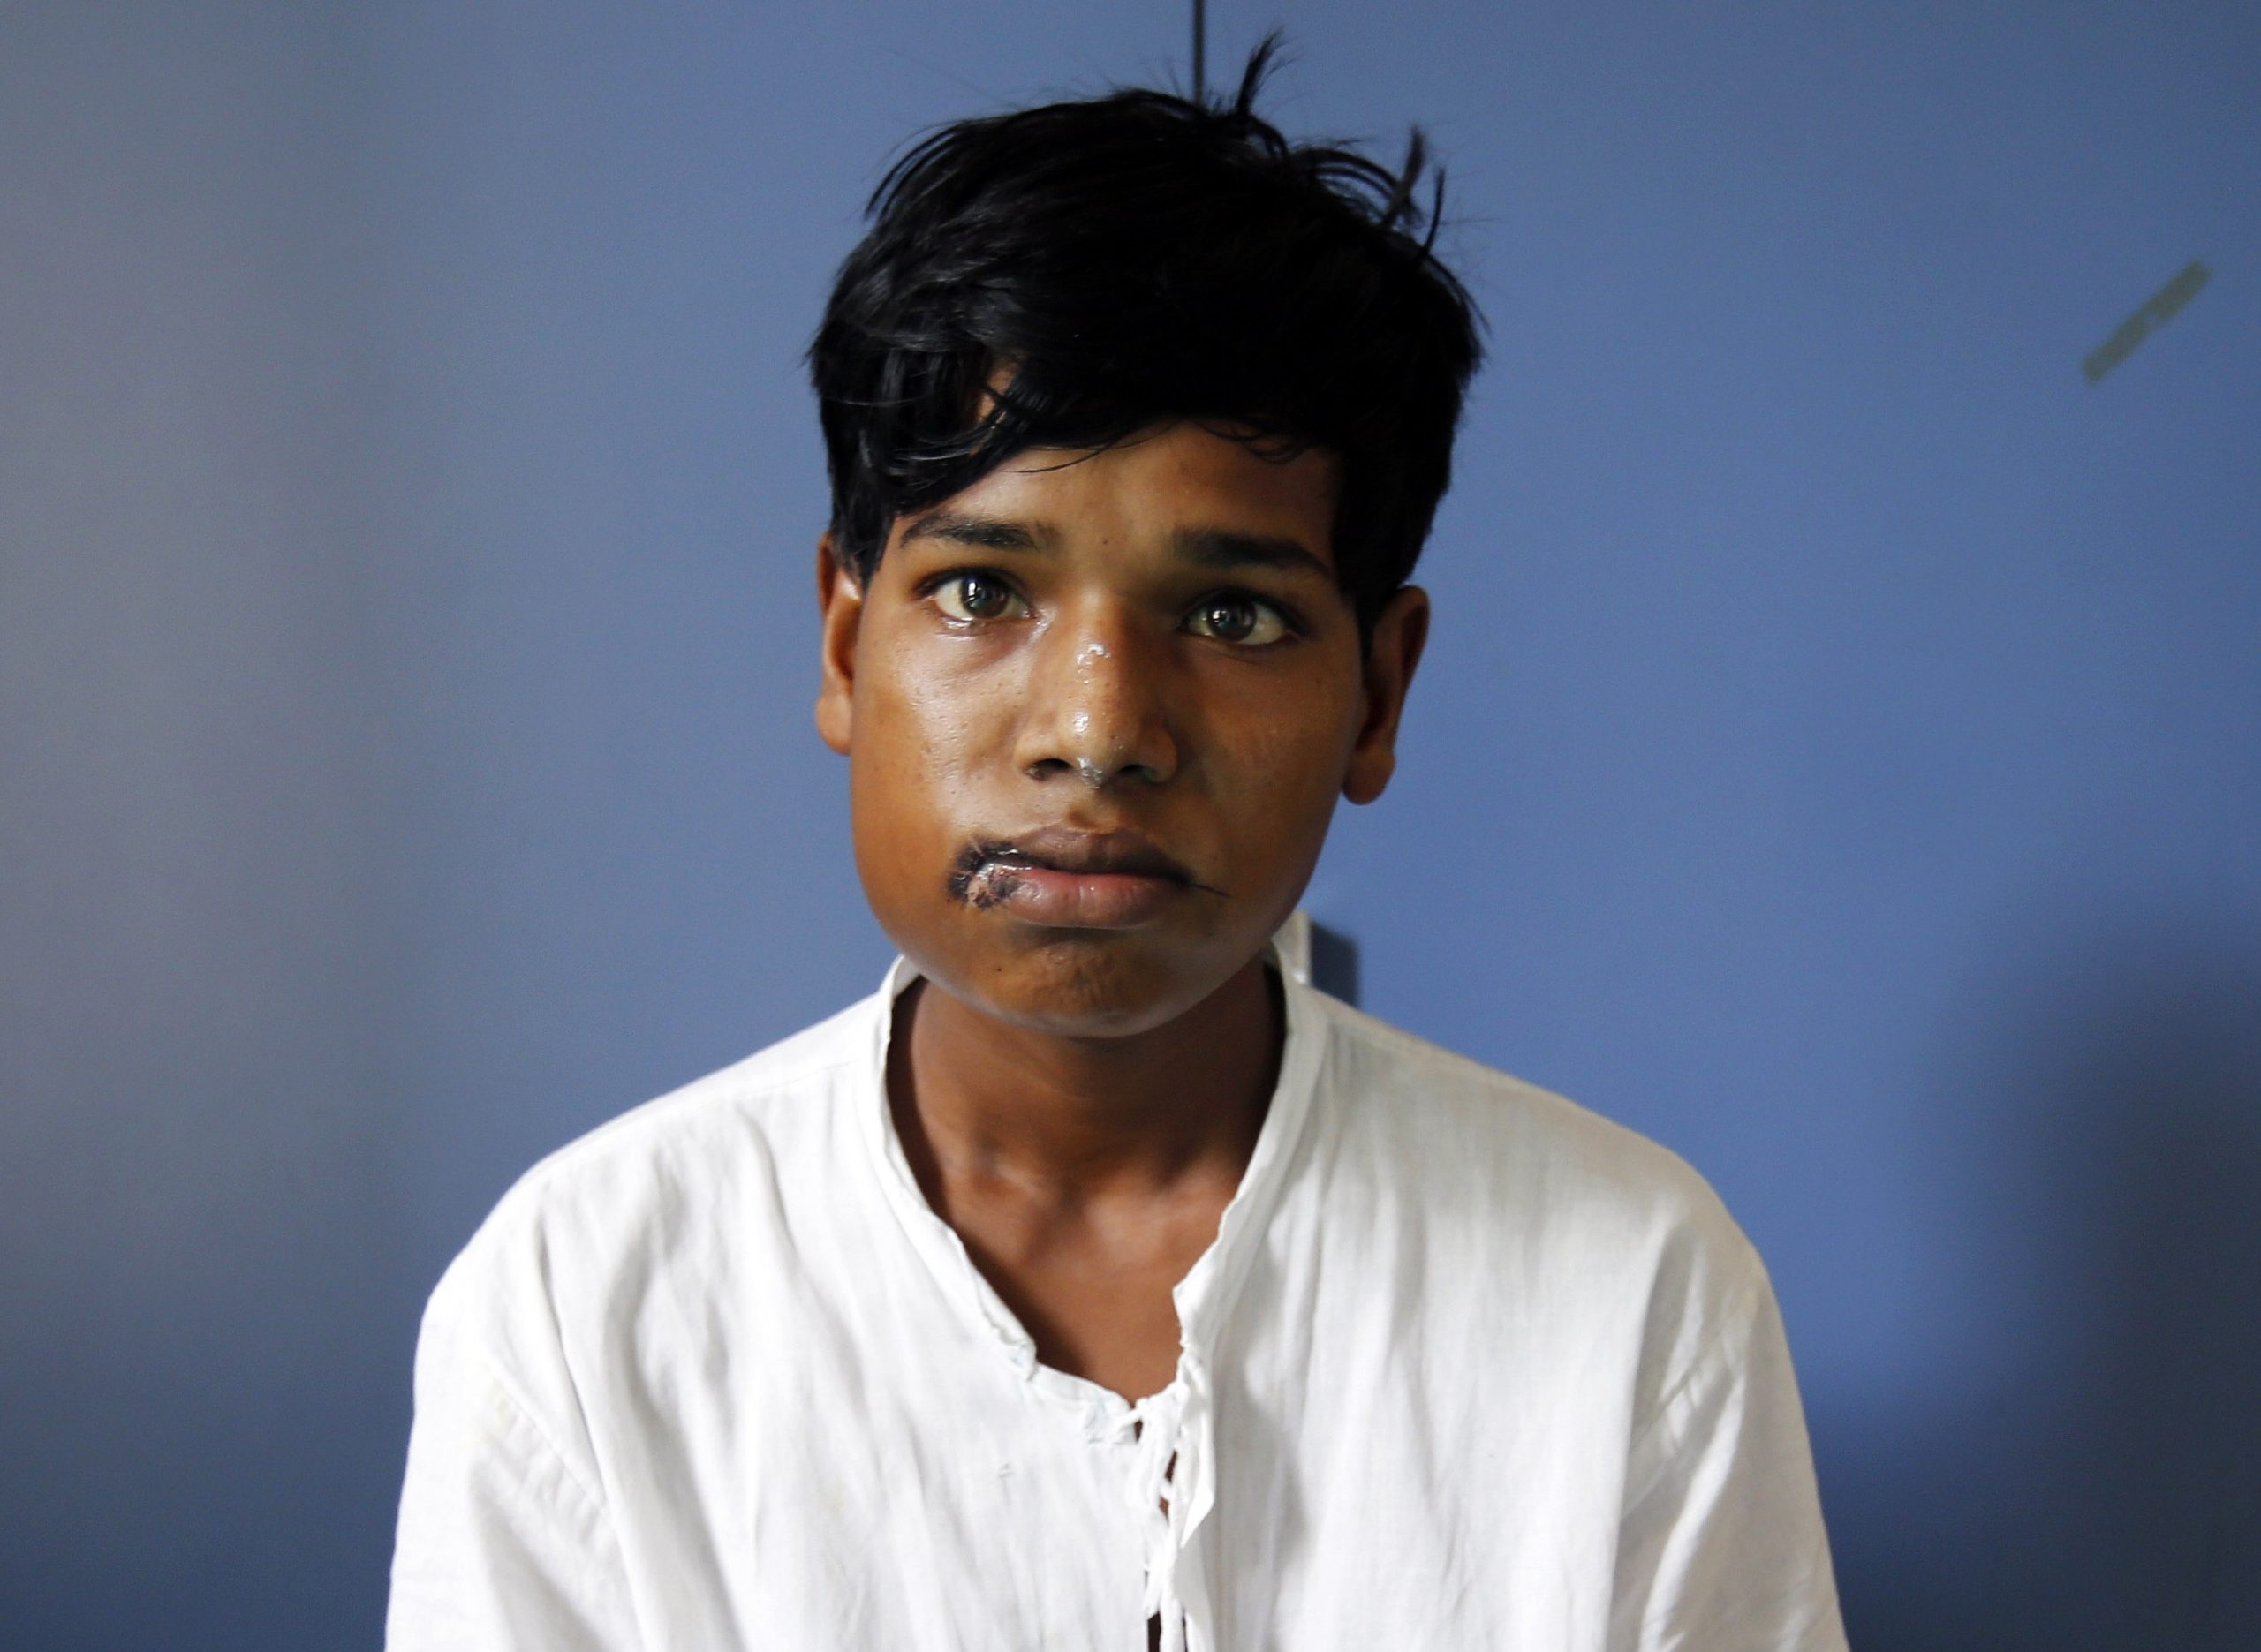 خارج کردن ۲۳۲ دندان از فک یک پسربچه هندی+ تحلیل خبر